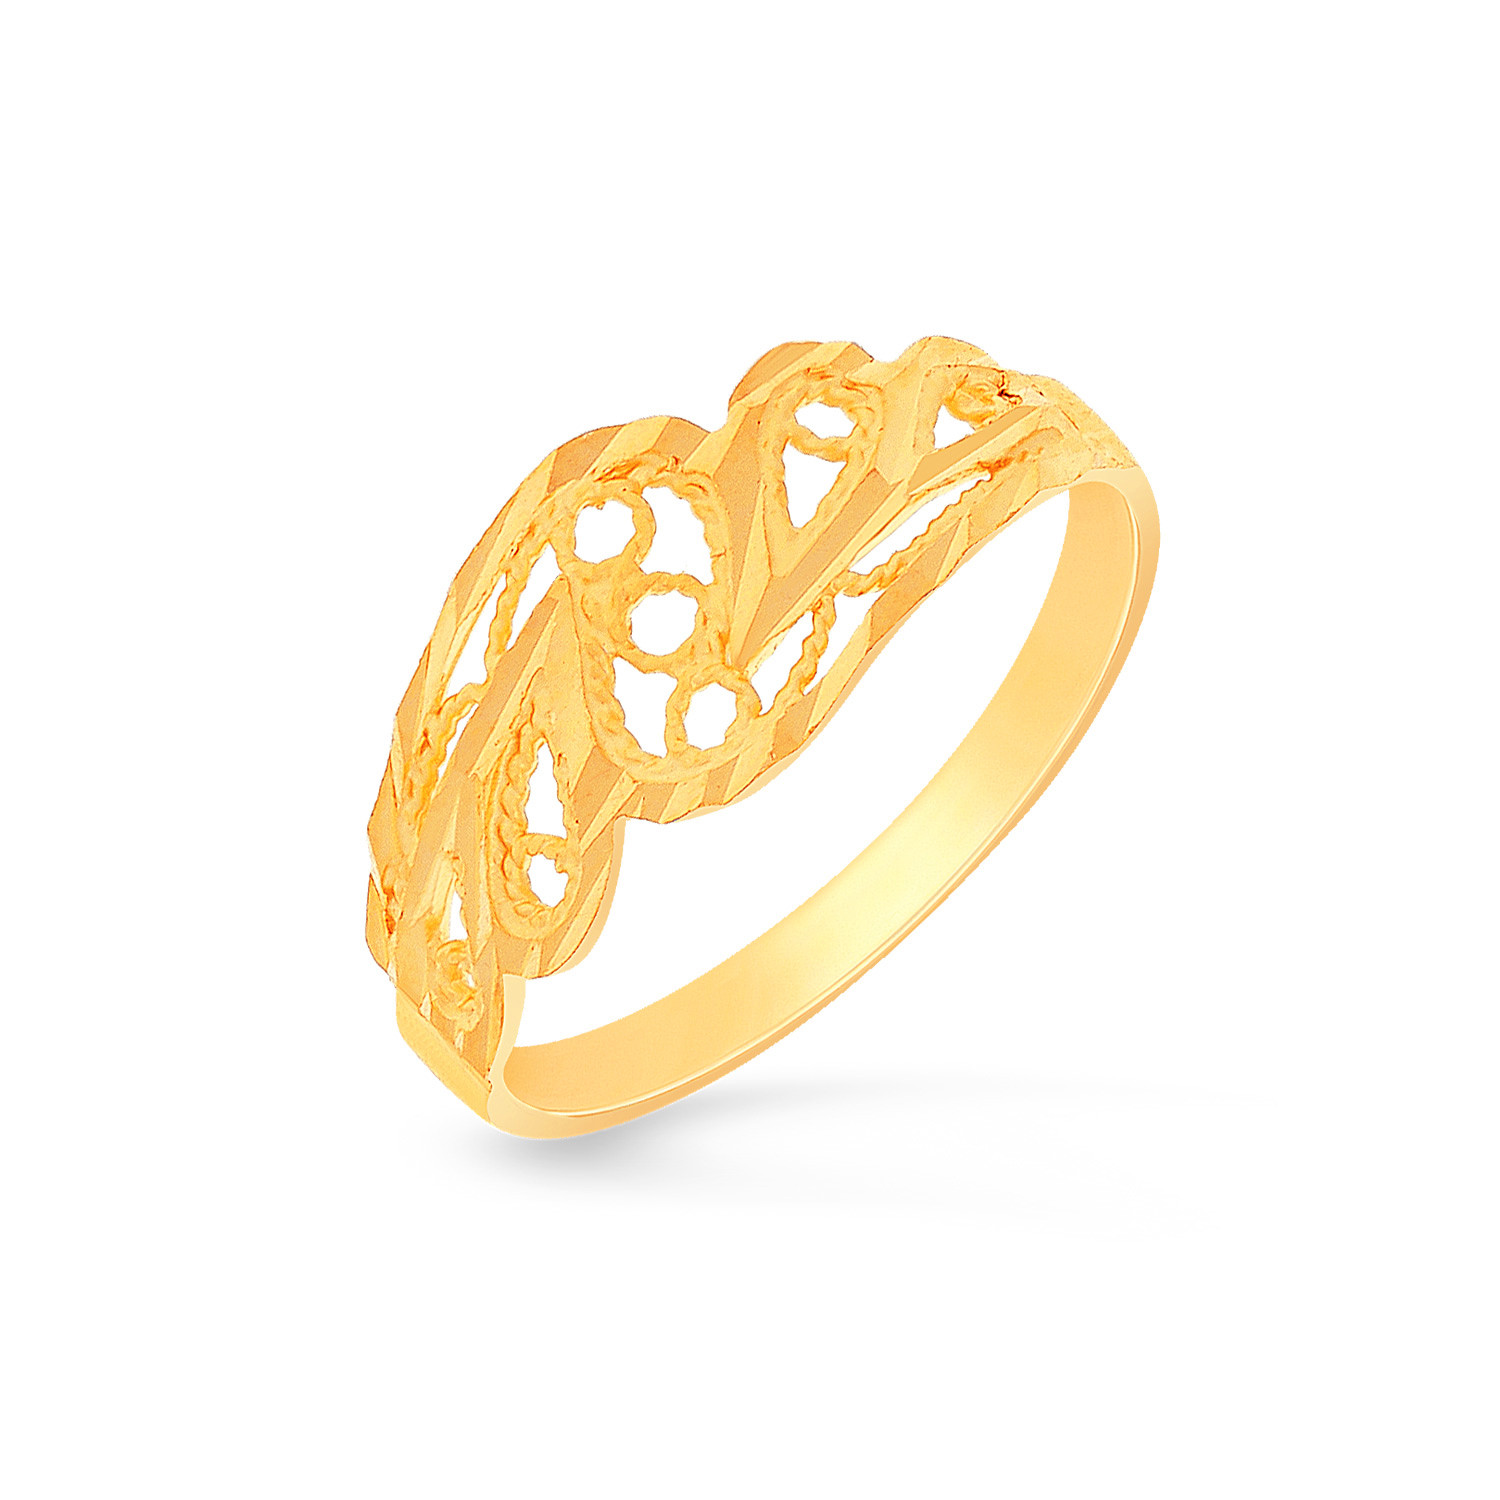 MALABAR GOLD & DIAMONDS Malabar Gold Ring